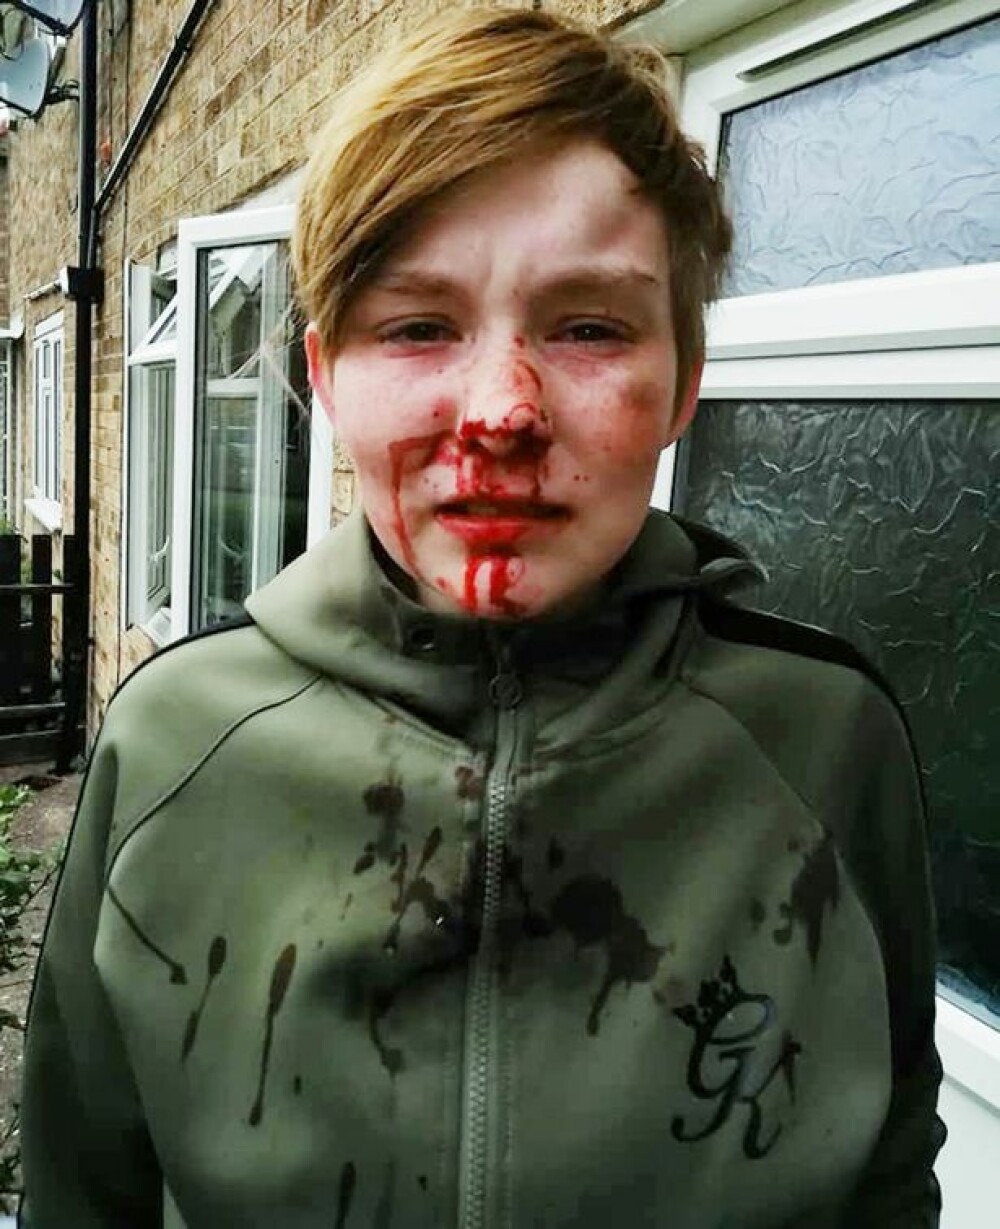 Tânără de 18 ani snopita în bătaie în plină strada pentru că era lesbiană. Cine sunt agresorii - Imaginea 2